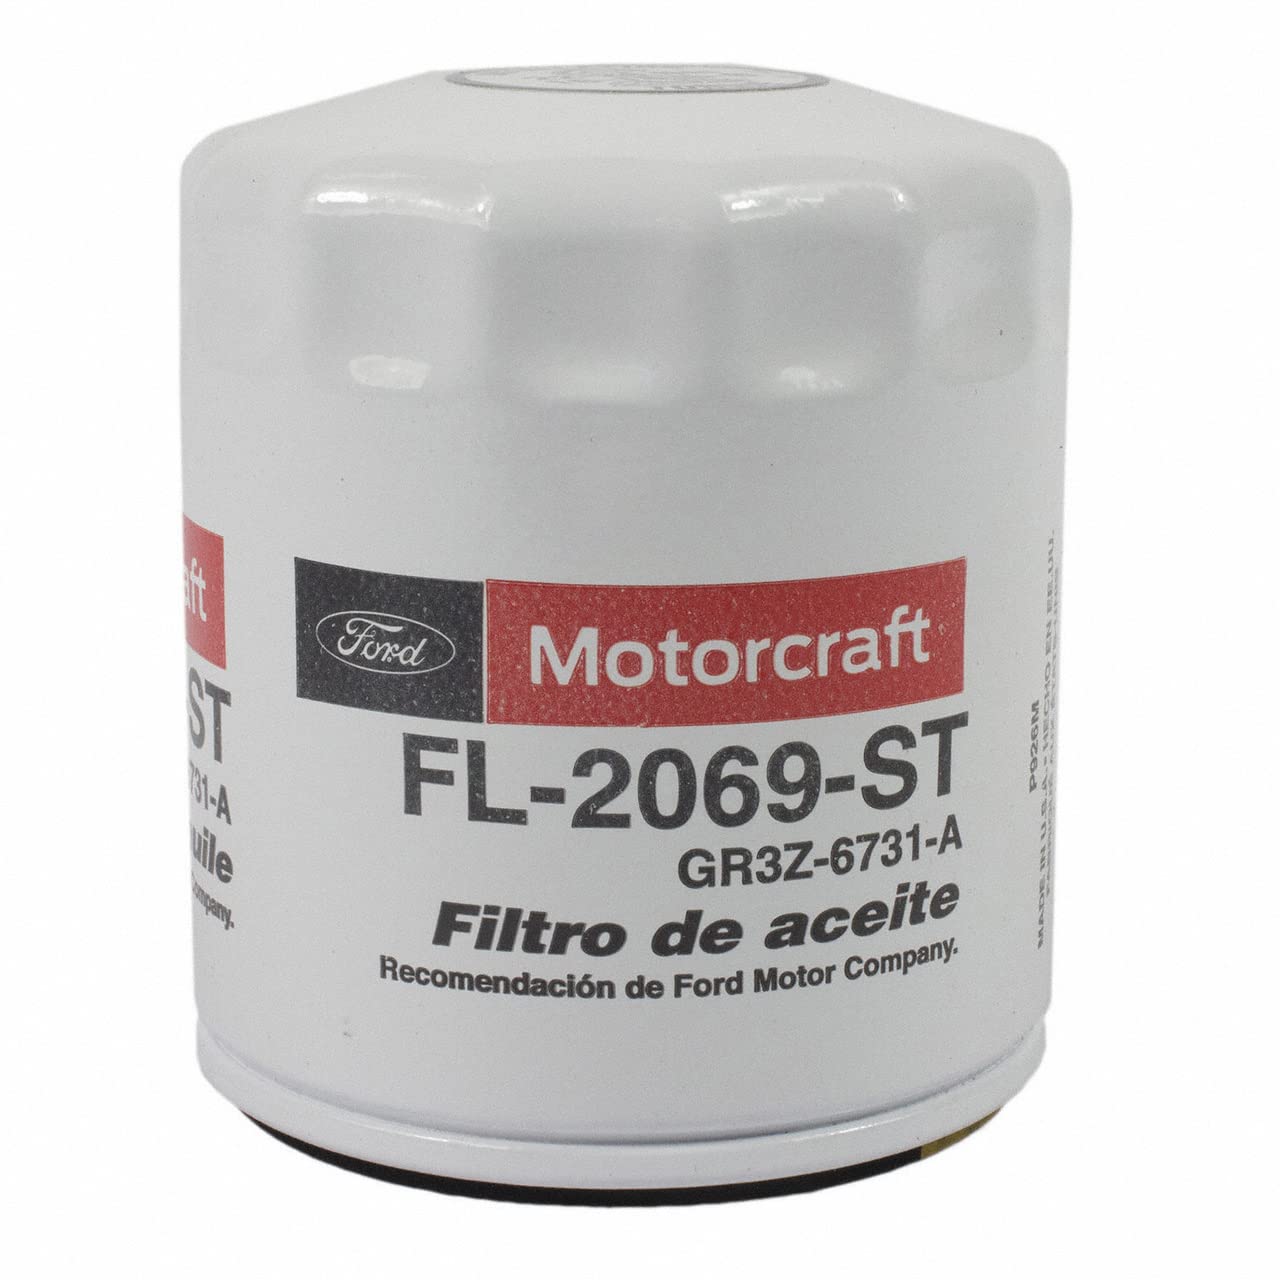 Motorcraft - Filter Asy - Öl (FL2069ST) von Motorcraft